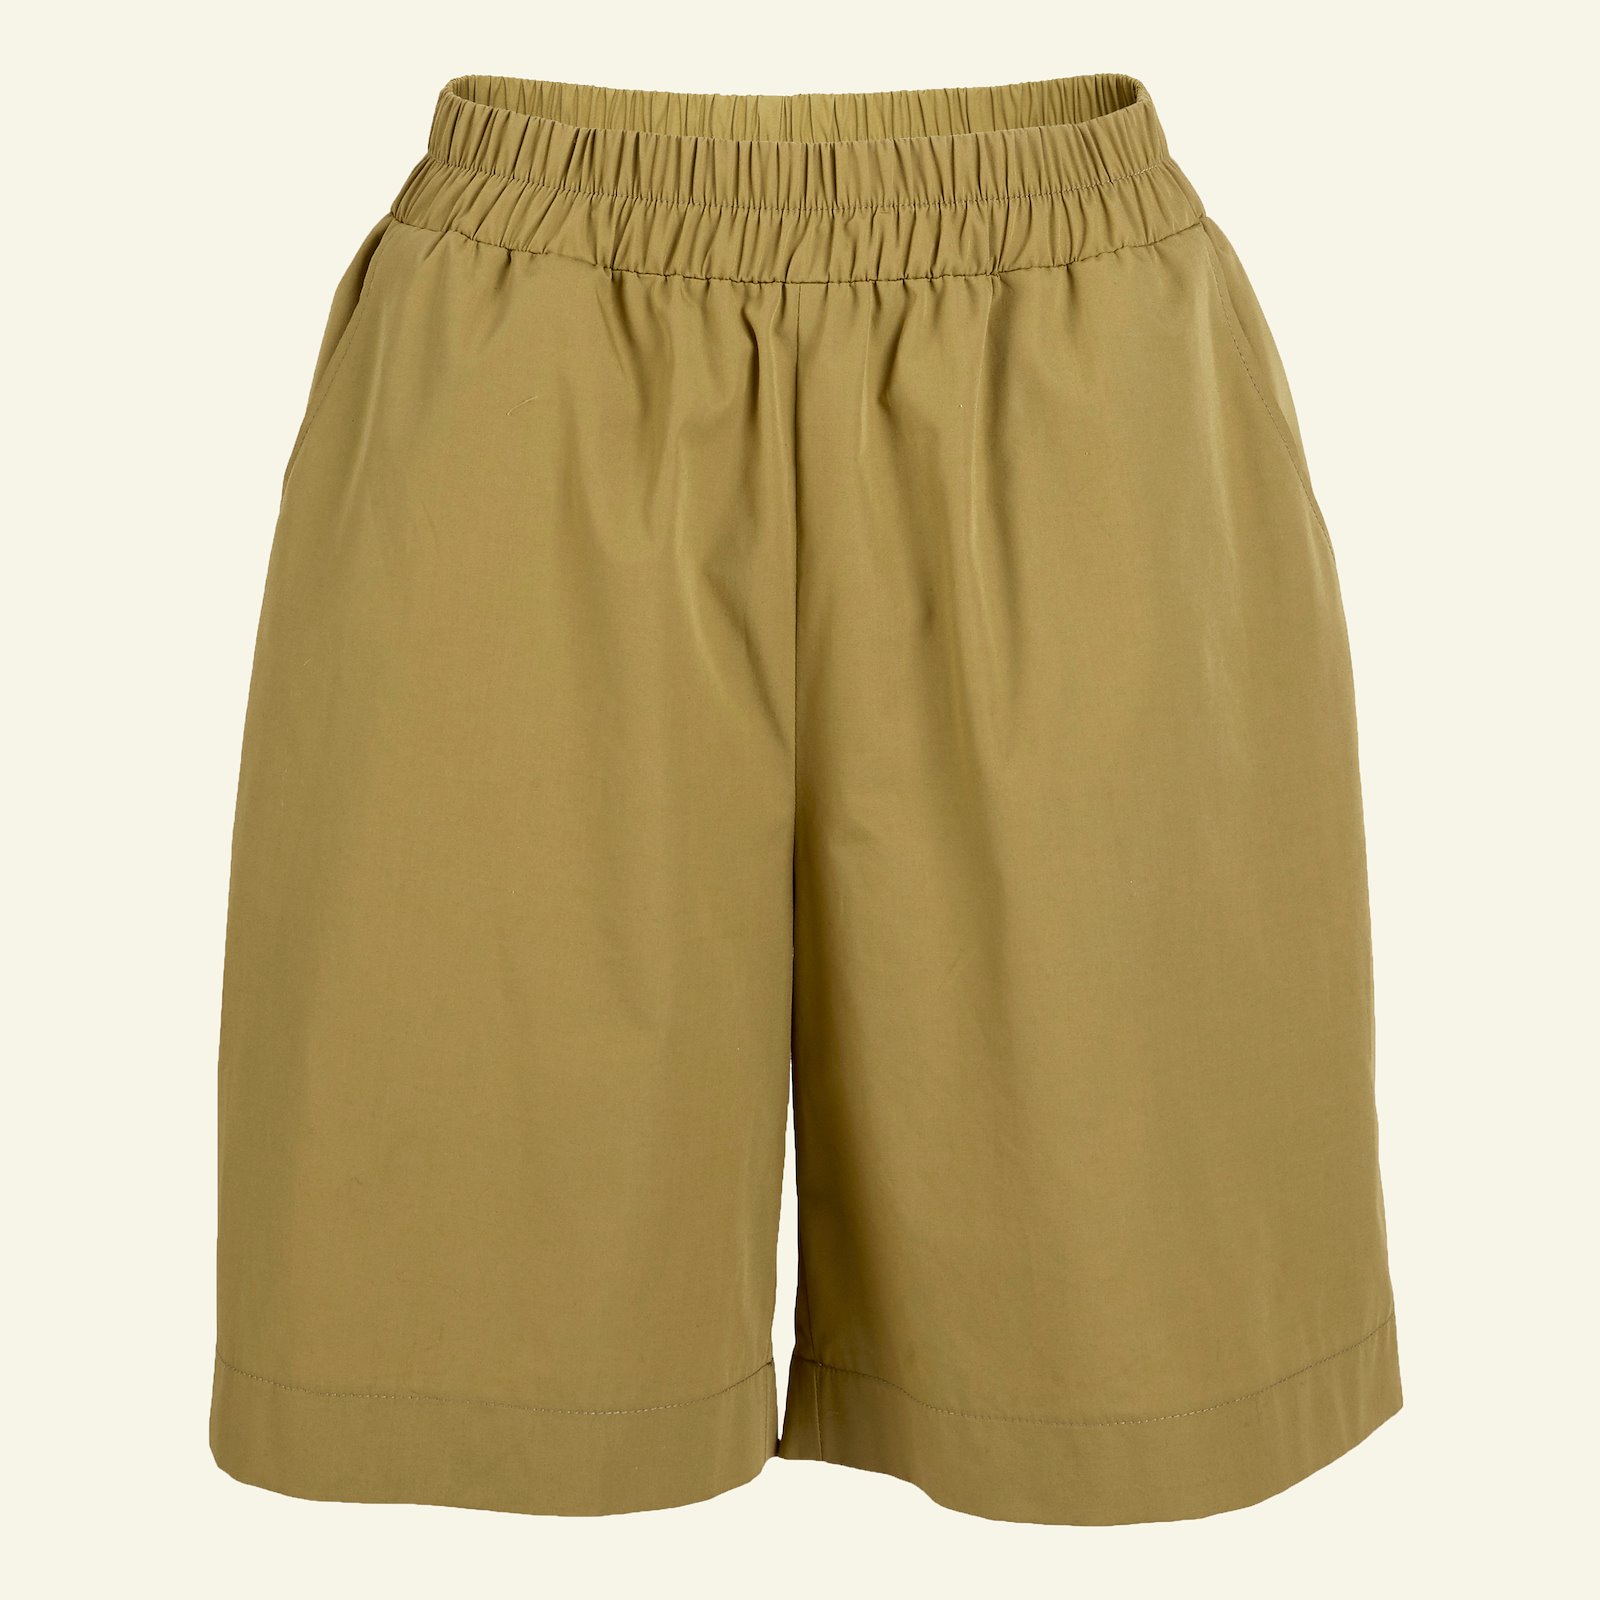 Bukse/shorts med vidde og lommer, 46 p20051_501926_sskit